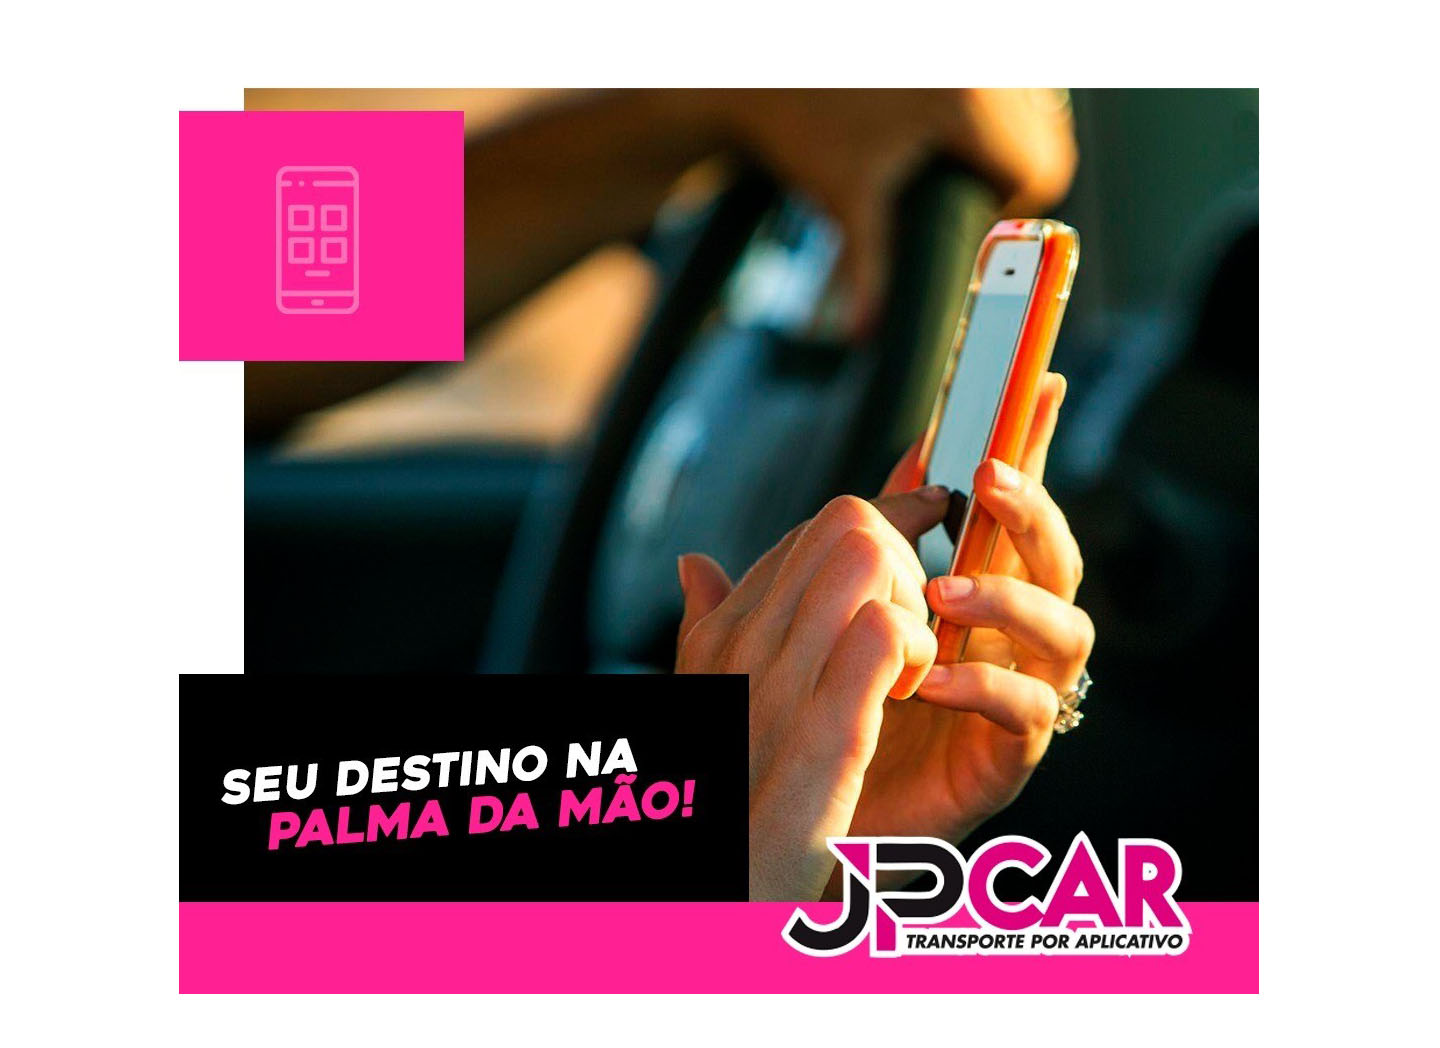 JPCAR - Transporte por Aplicativo 